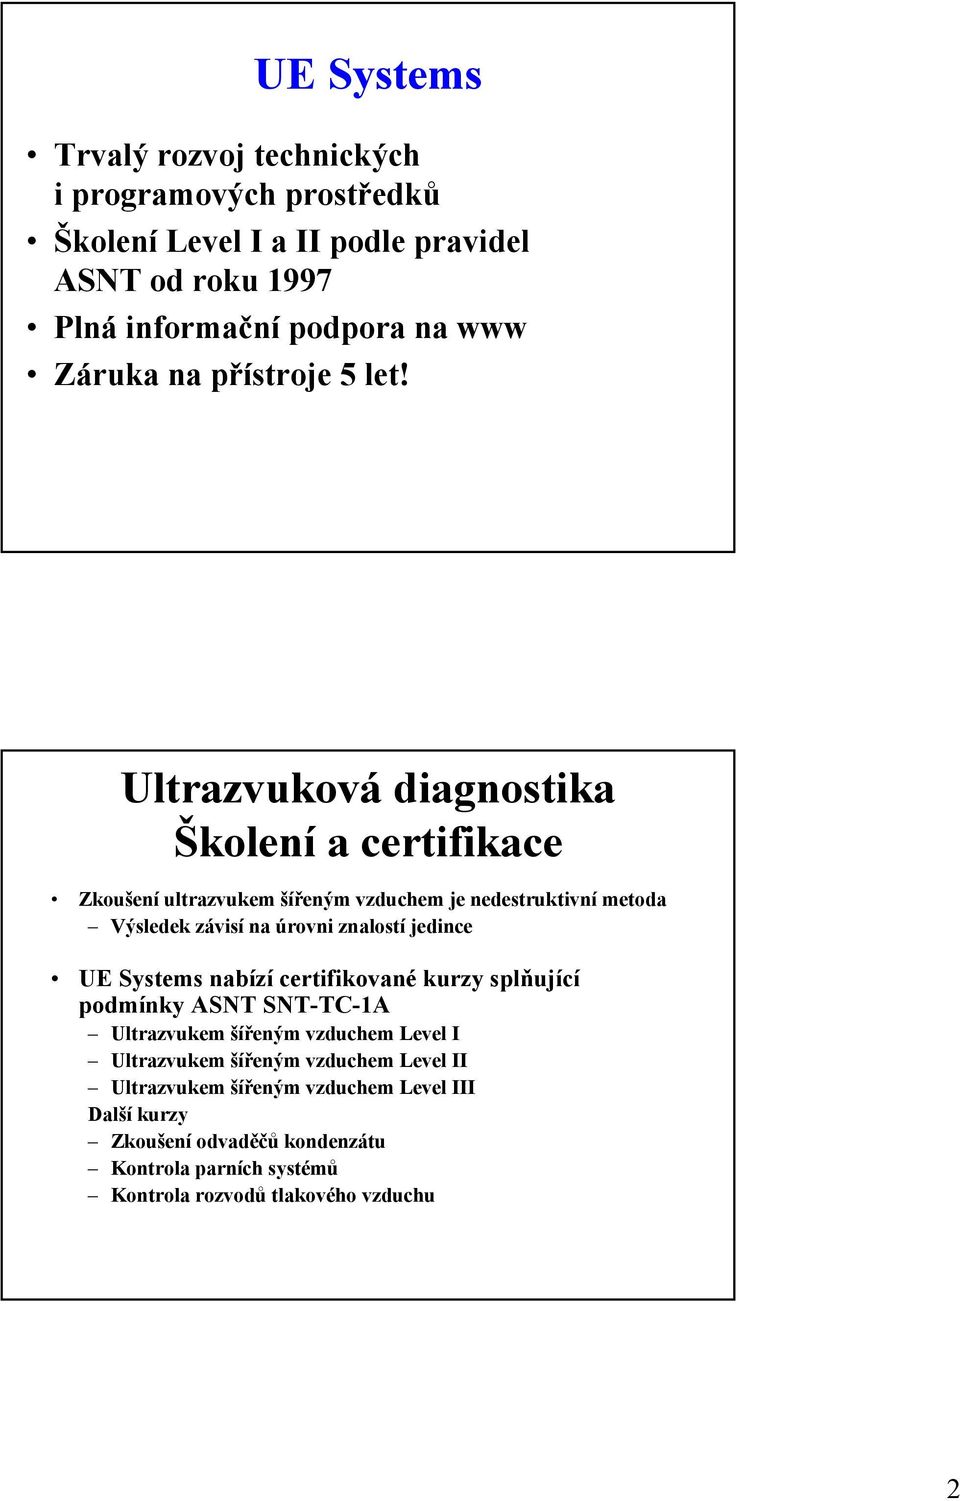 Ultrazvuková diagnostika Školení a certifikace Zkoušení ultrazvukem šířeným vzduchem je nedestruktivní metoda Výsledek závisí na úrovni znalostí jedince